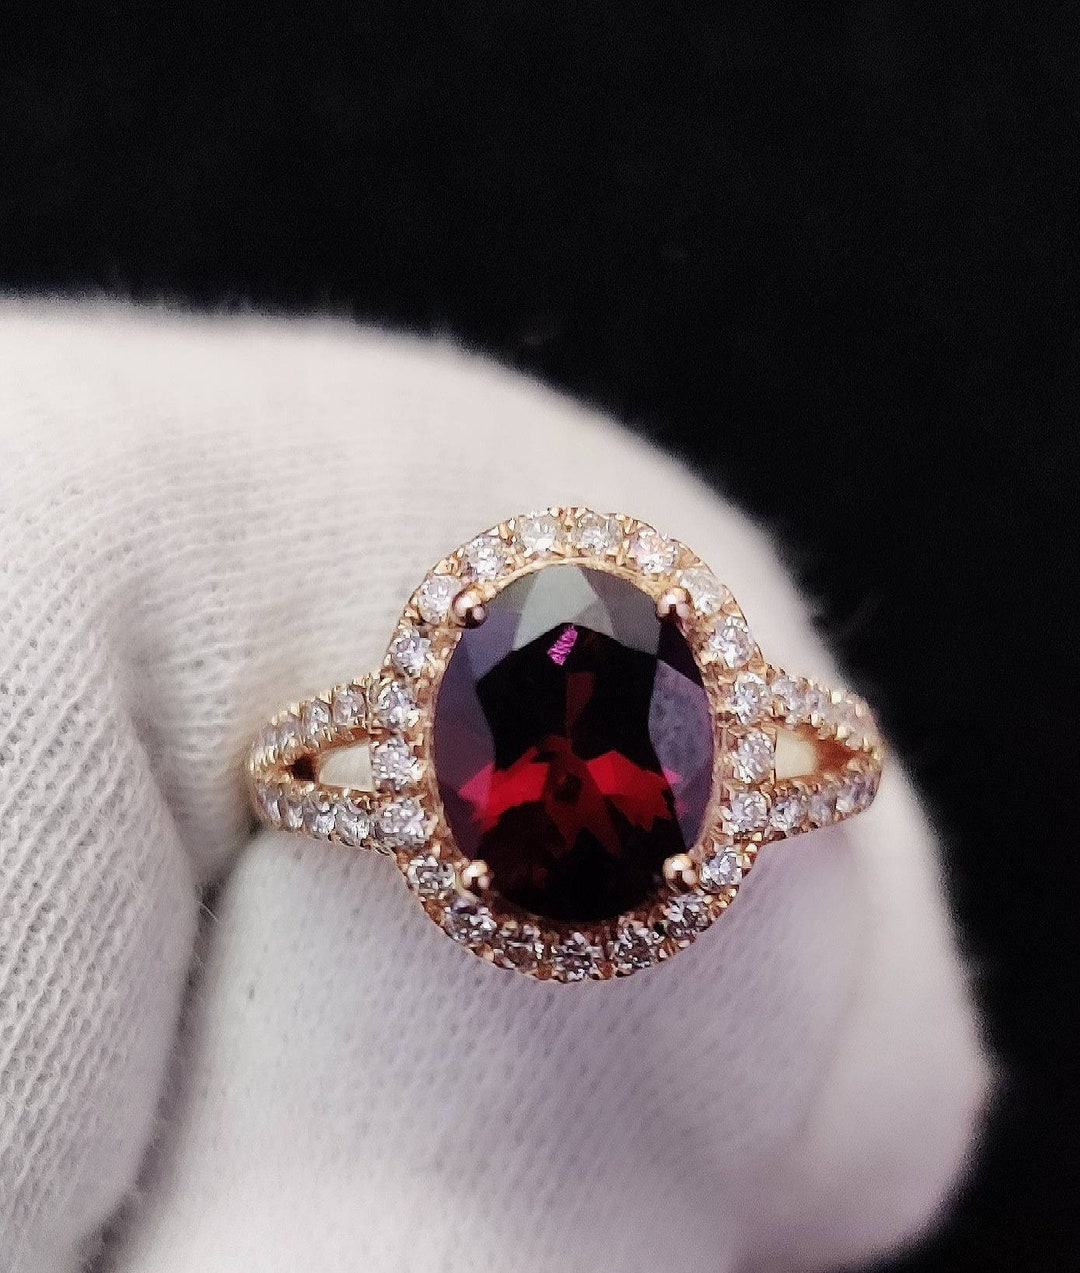 Buy Natural Garnet Engagement Ring Diamond Wedding Band 14K Rose Online ...